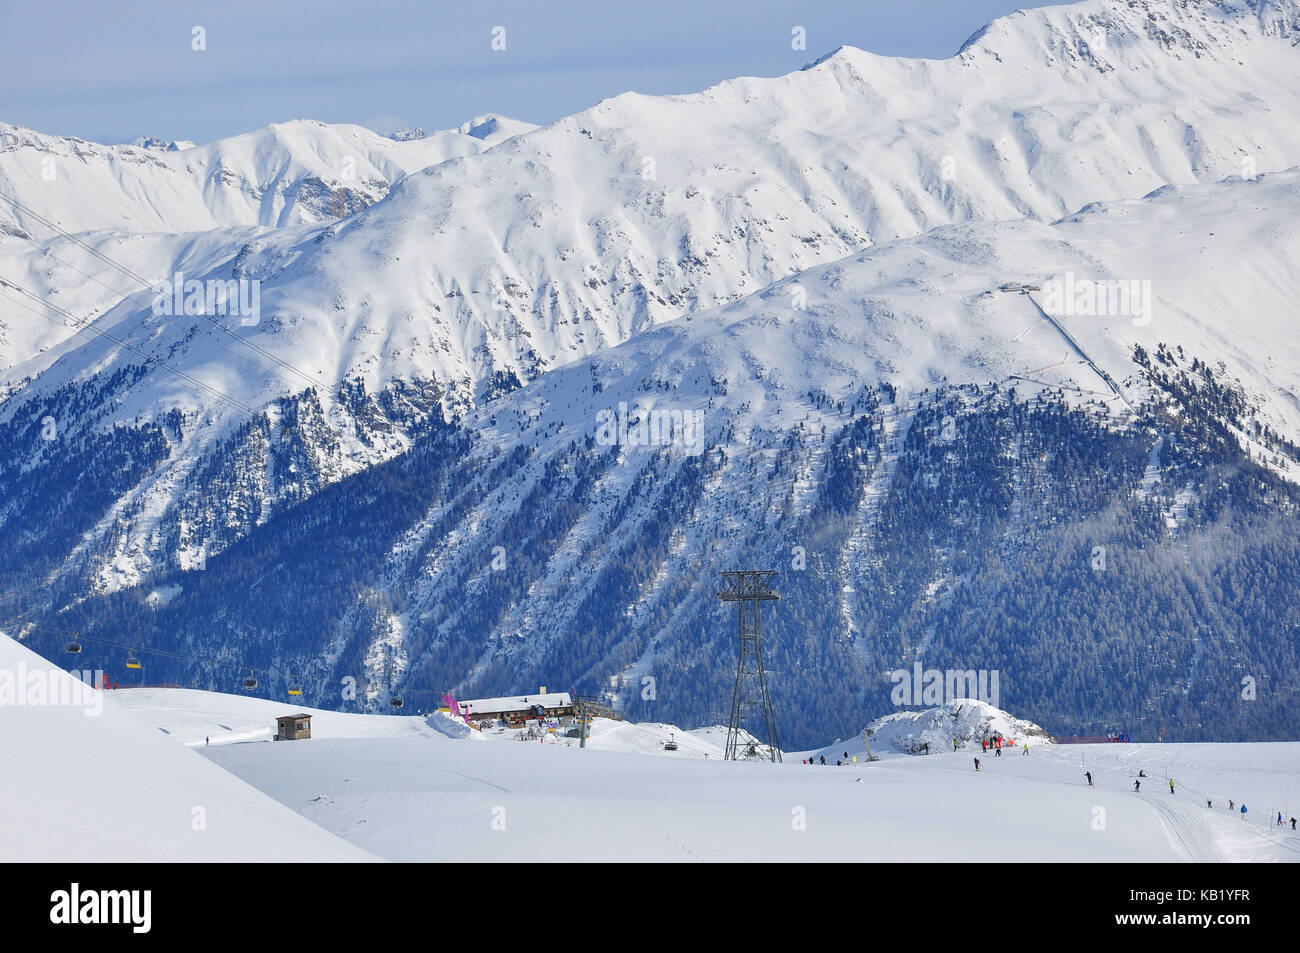 La Suisse, canton des Grisons, l'Engadine, st. MORITZ, corviglia, piste de ski, Ridge, hiver, Banque D'Images